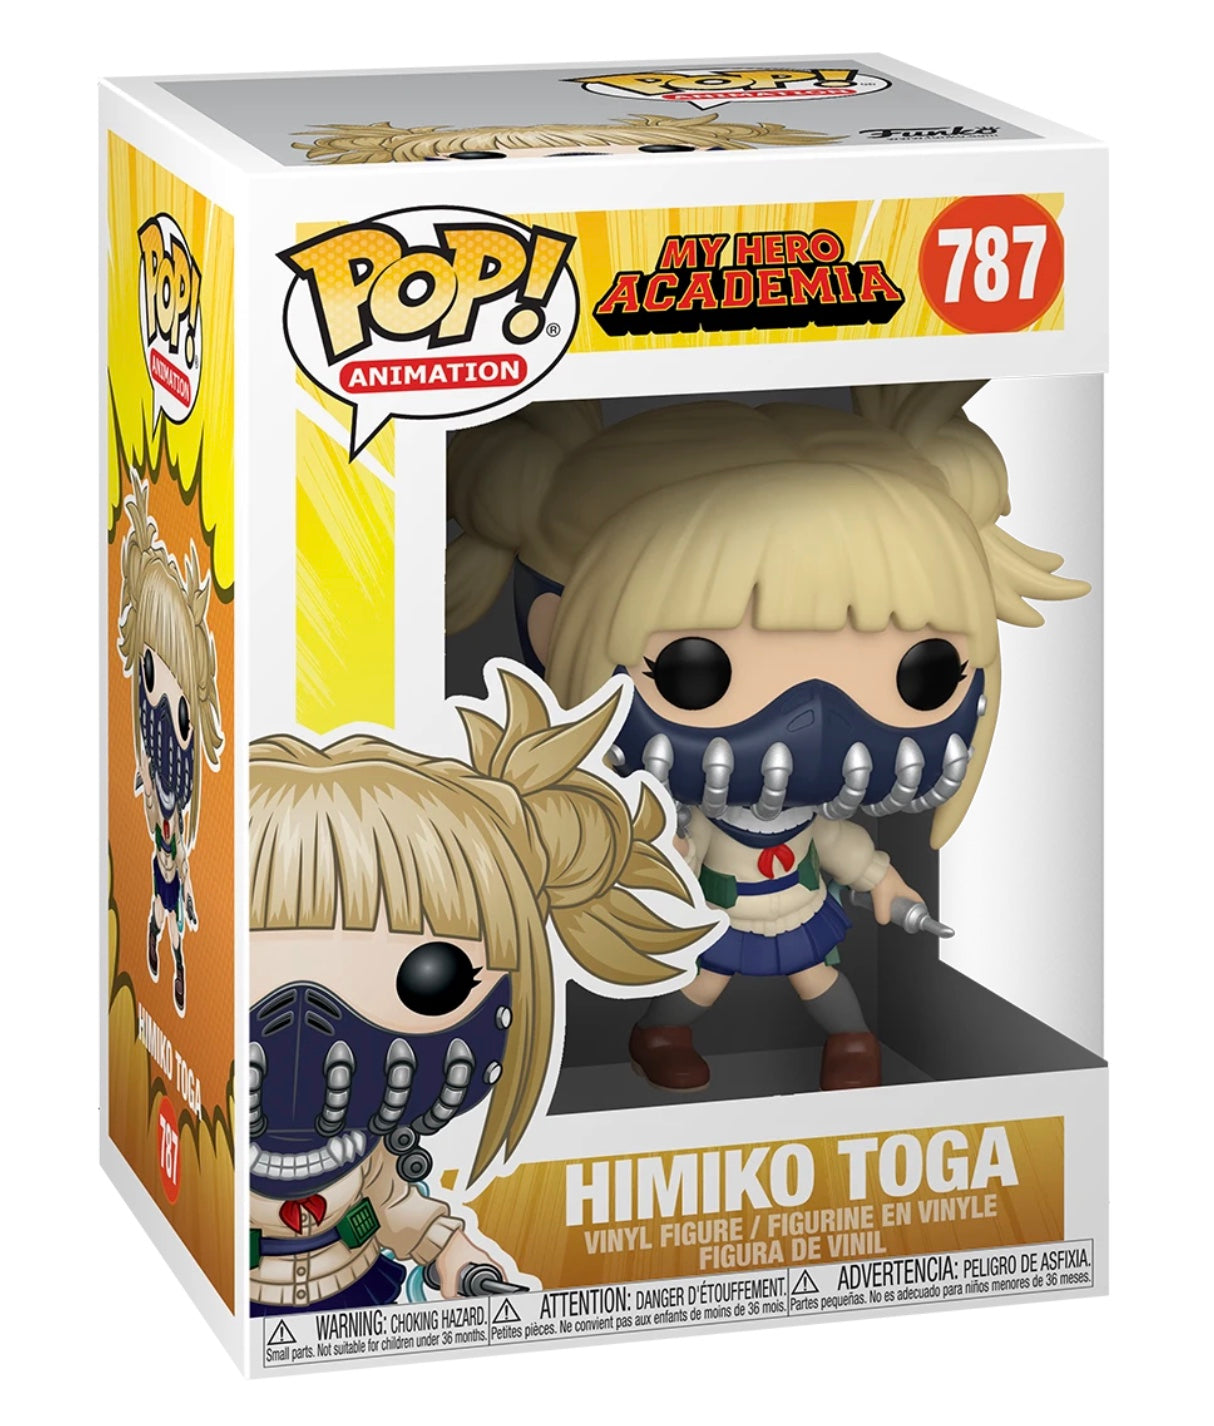 My Hero Academia - Pop! #787 - Himiko Toga Figure